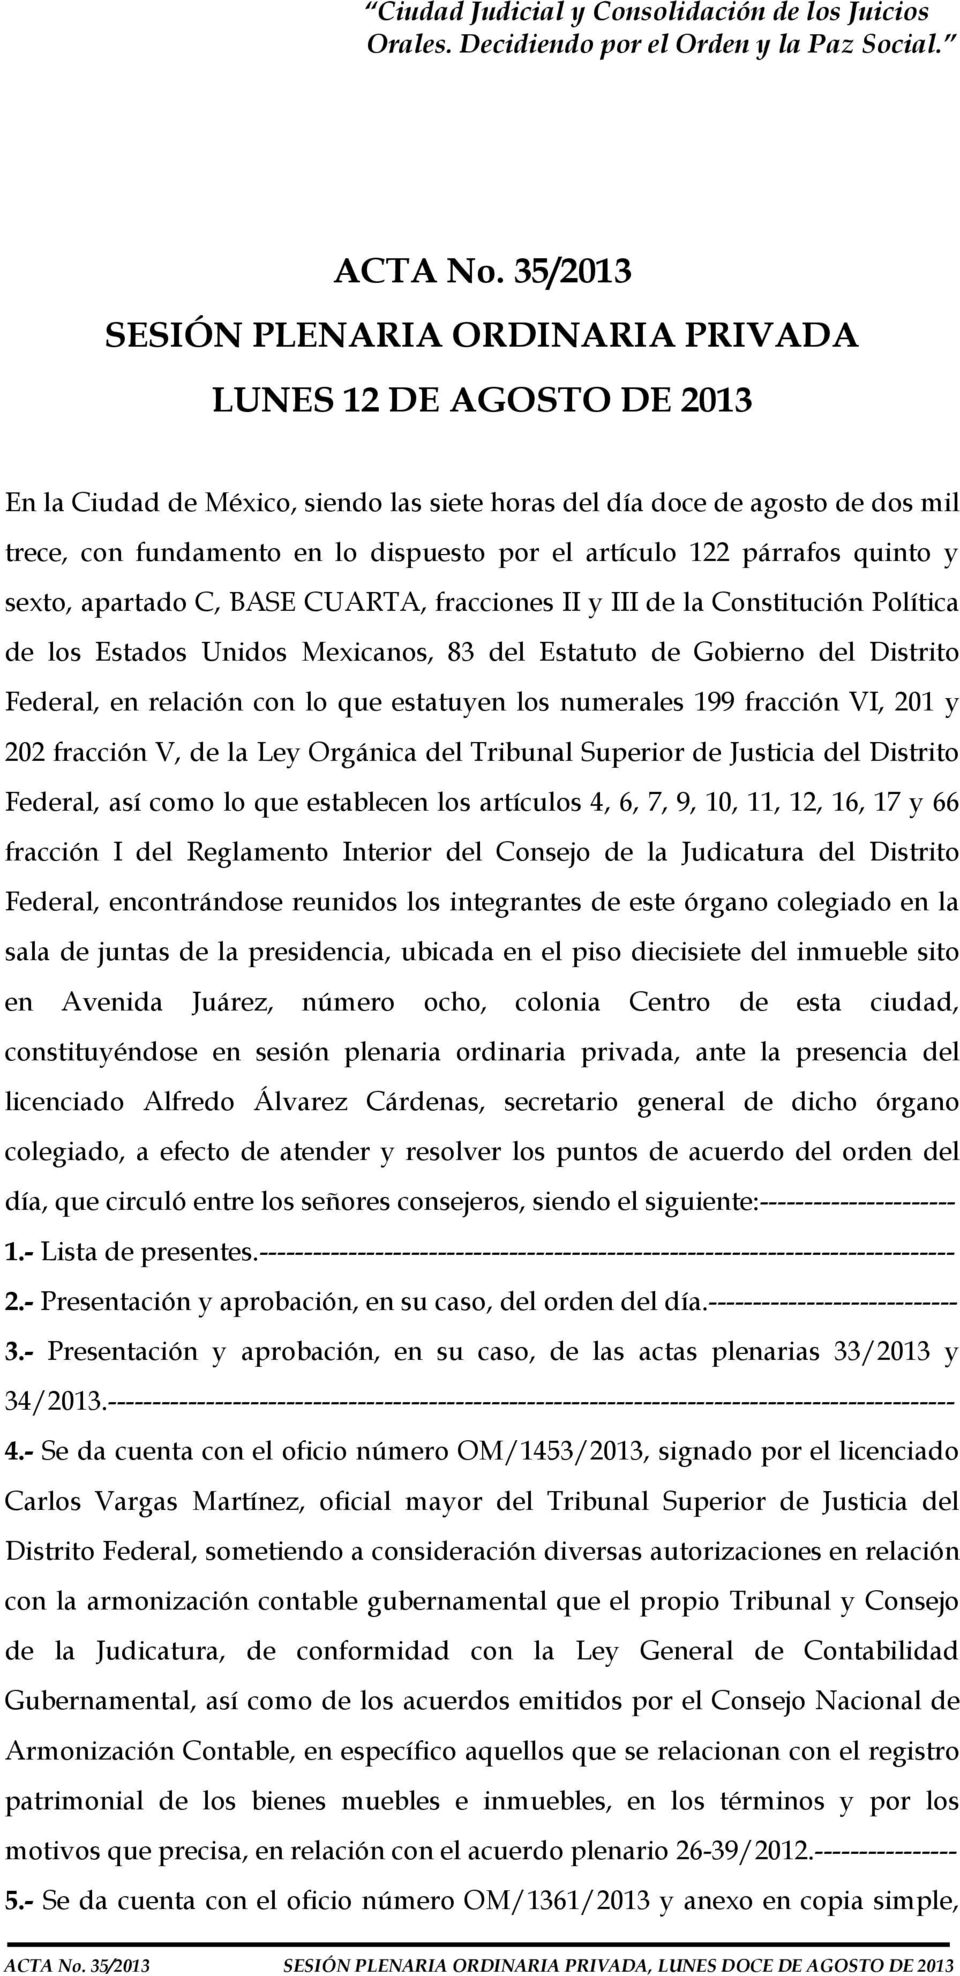 artículo 122 párrafos quinto y sexto, apartado C, BASE CUARTA, fracciones II y III de la Constitución Política de los Estados Unidos Mexicanos, 83 del Estatuto de Gobierno del Distrito Federal, en